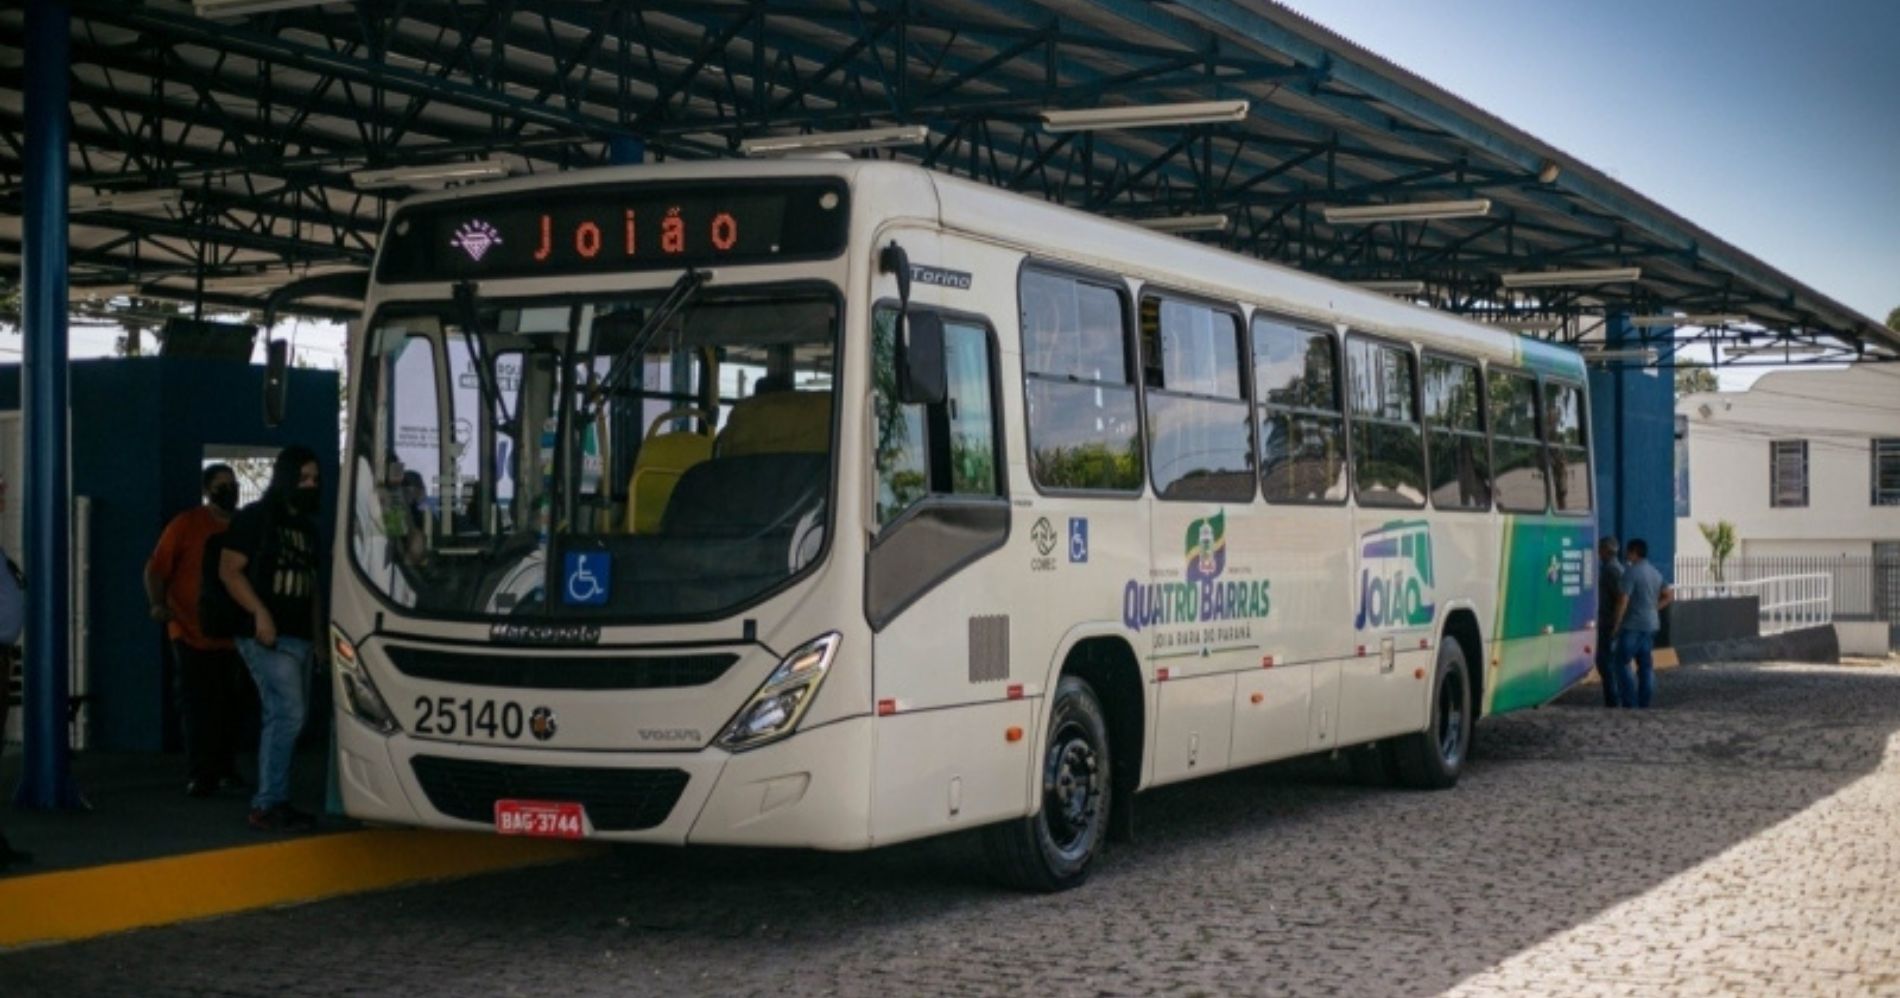 Quatro Barras lança internet gratuita em ônibus de transporte coletivo e praças públicas